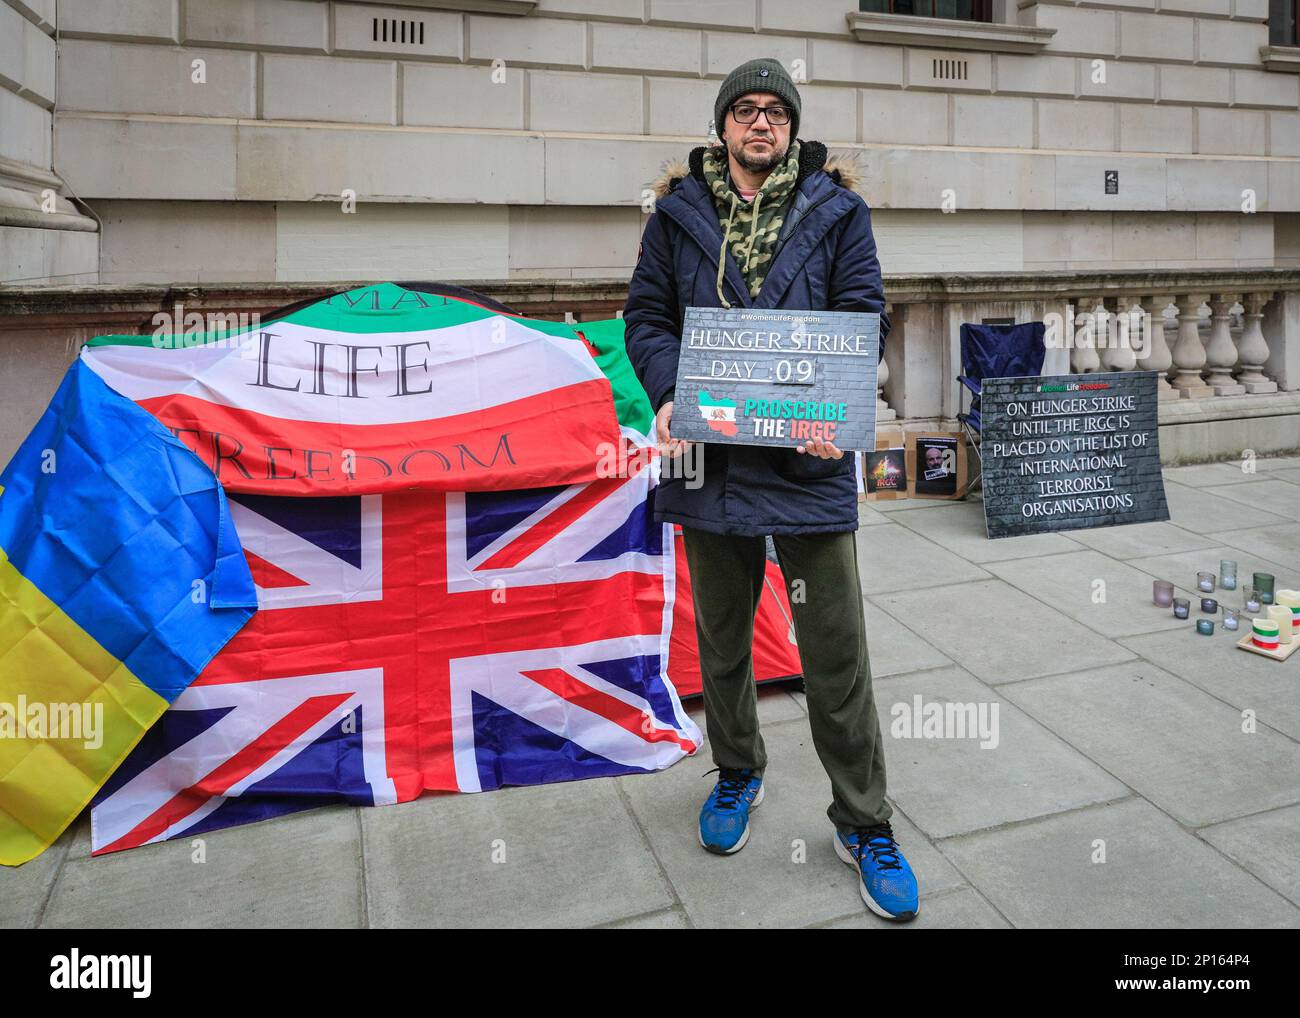 Westminster, Londra, Regno Unito. 03rd Mar, 2023. Vahid Beheshti, che dichiara di essere un giornalista, è visto il giorno 9 del suo sciopero della fame al di fuori dell'Ufficio degli Esteri britannico a Westminster. Beheshti chiede che l'IRGC (corpo della Guardia rivoluzionaria Islamica) sia inserito nella lista delle organizzazioni terroristiche internazionali da parte del Regno Unito. L'IRGC, un ramo dell'esercito iraniano, è considerato un'organizzazione terroristica dagli Stati Uniti dal 2019, mentre l'UE ha recentemente approvato un emendamento che chiede agli stati membri di fare simili. Credit: Imageplotter/Alamy Live News Foto Stock